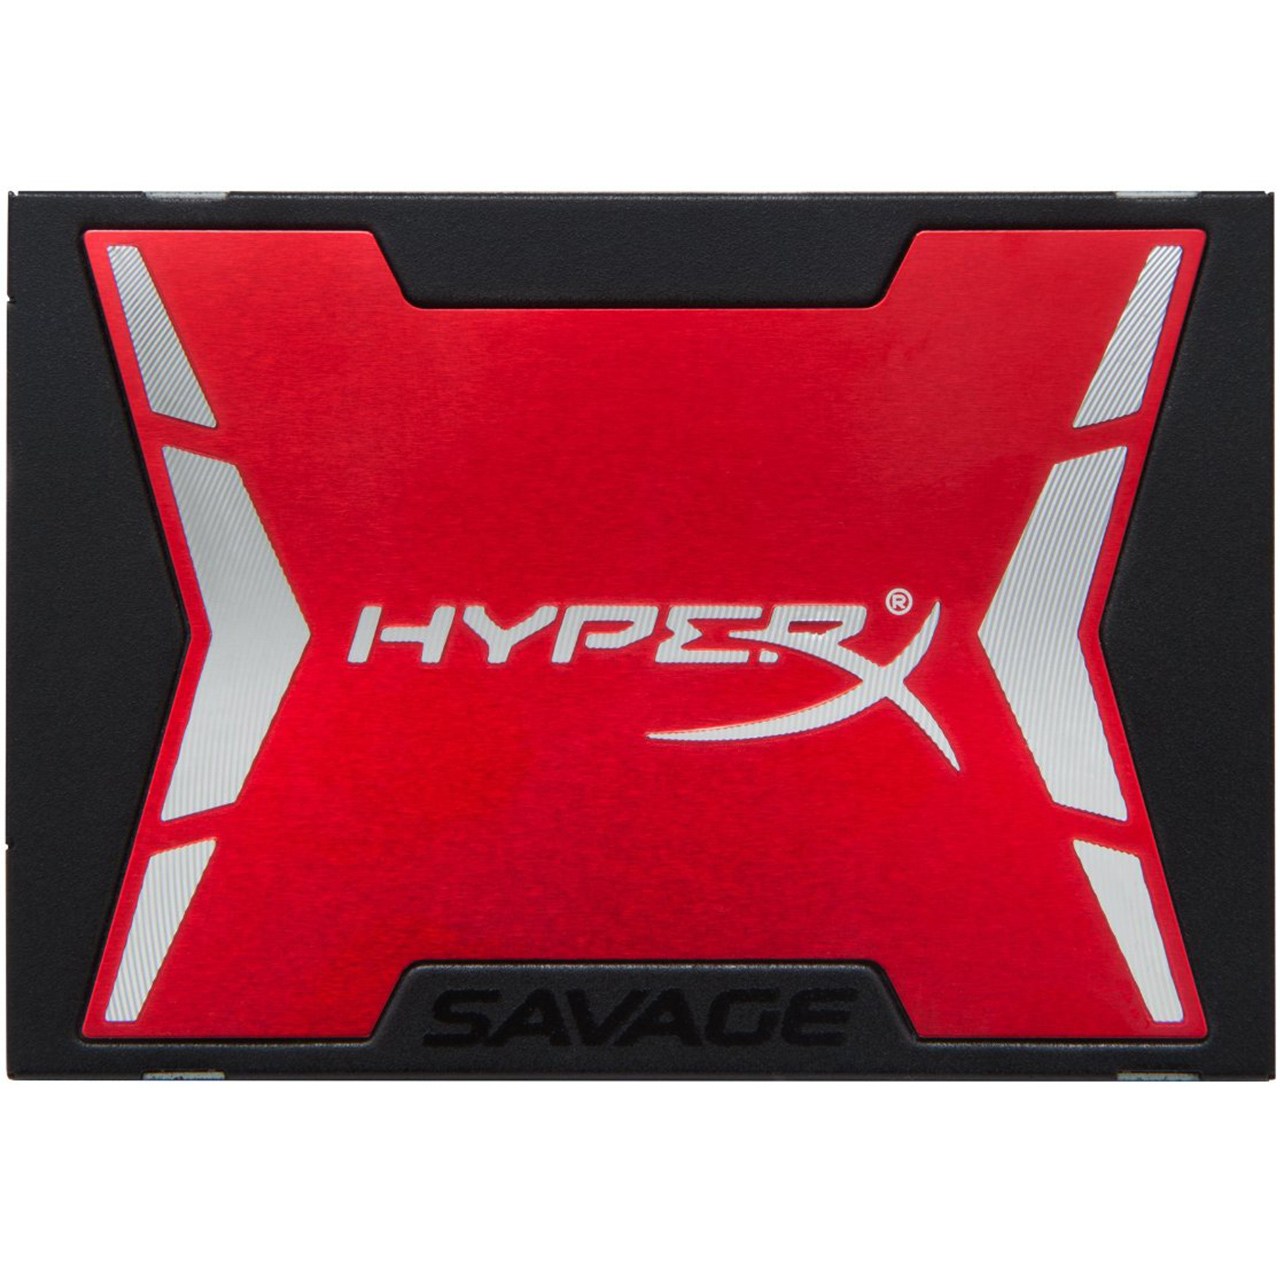 حافظه SSD کینگستون مدل HyperX Savage ظرفیت 120 گیگابایت